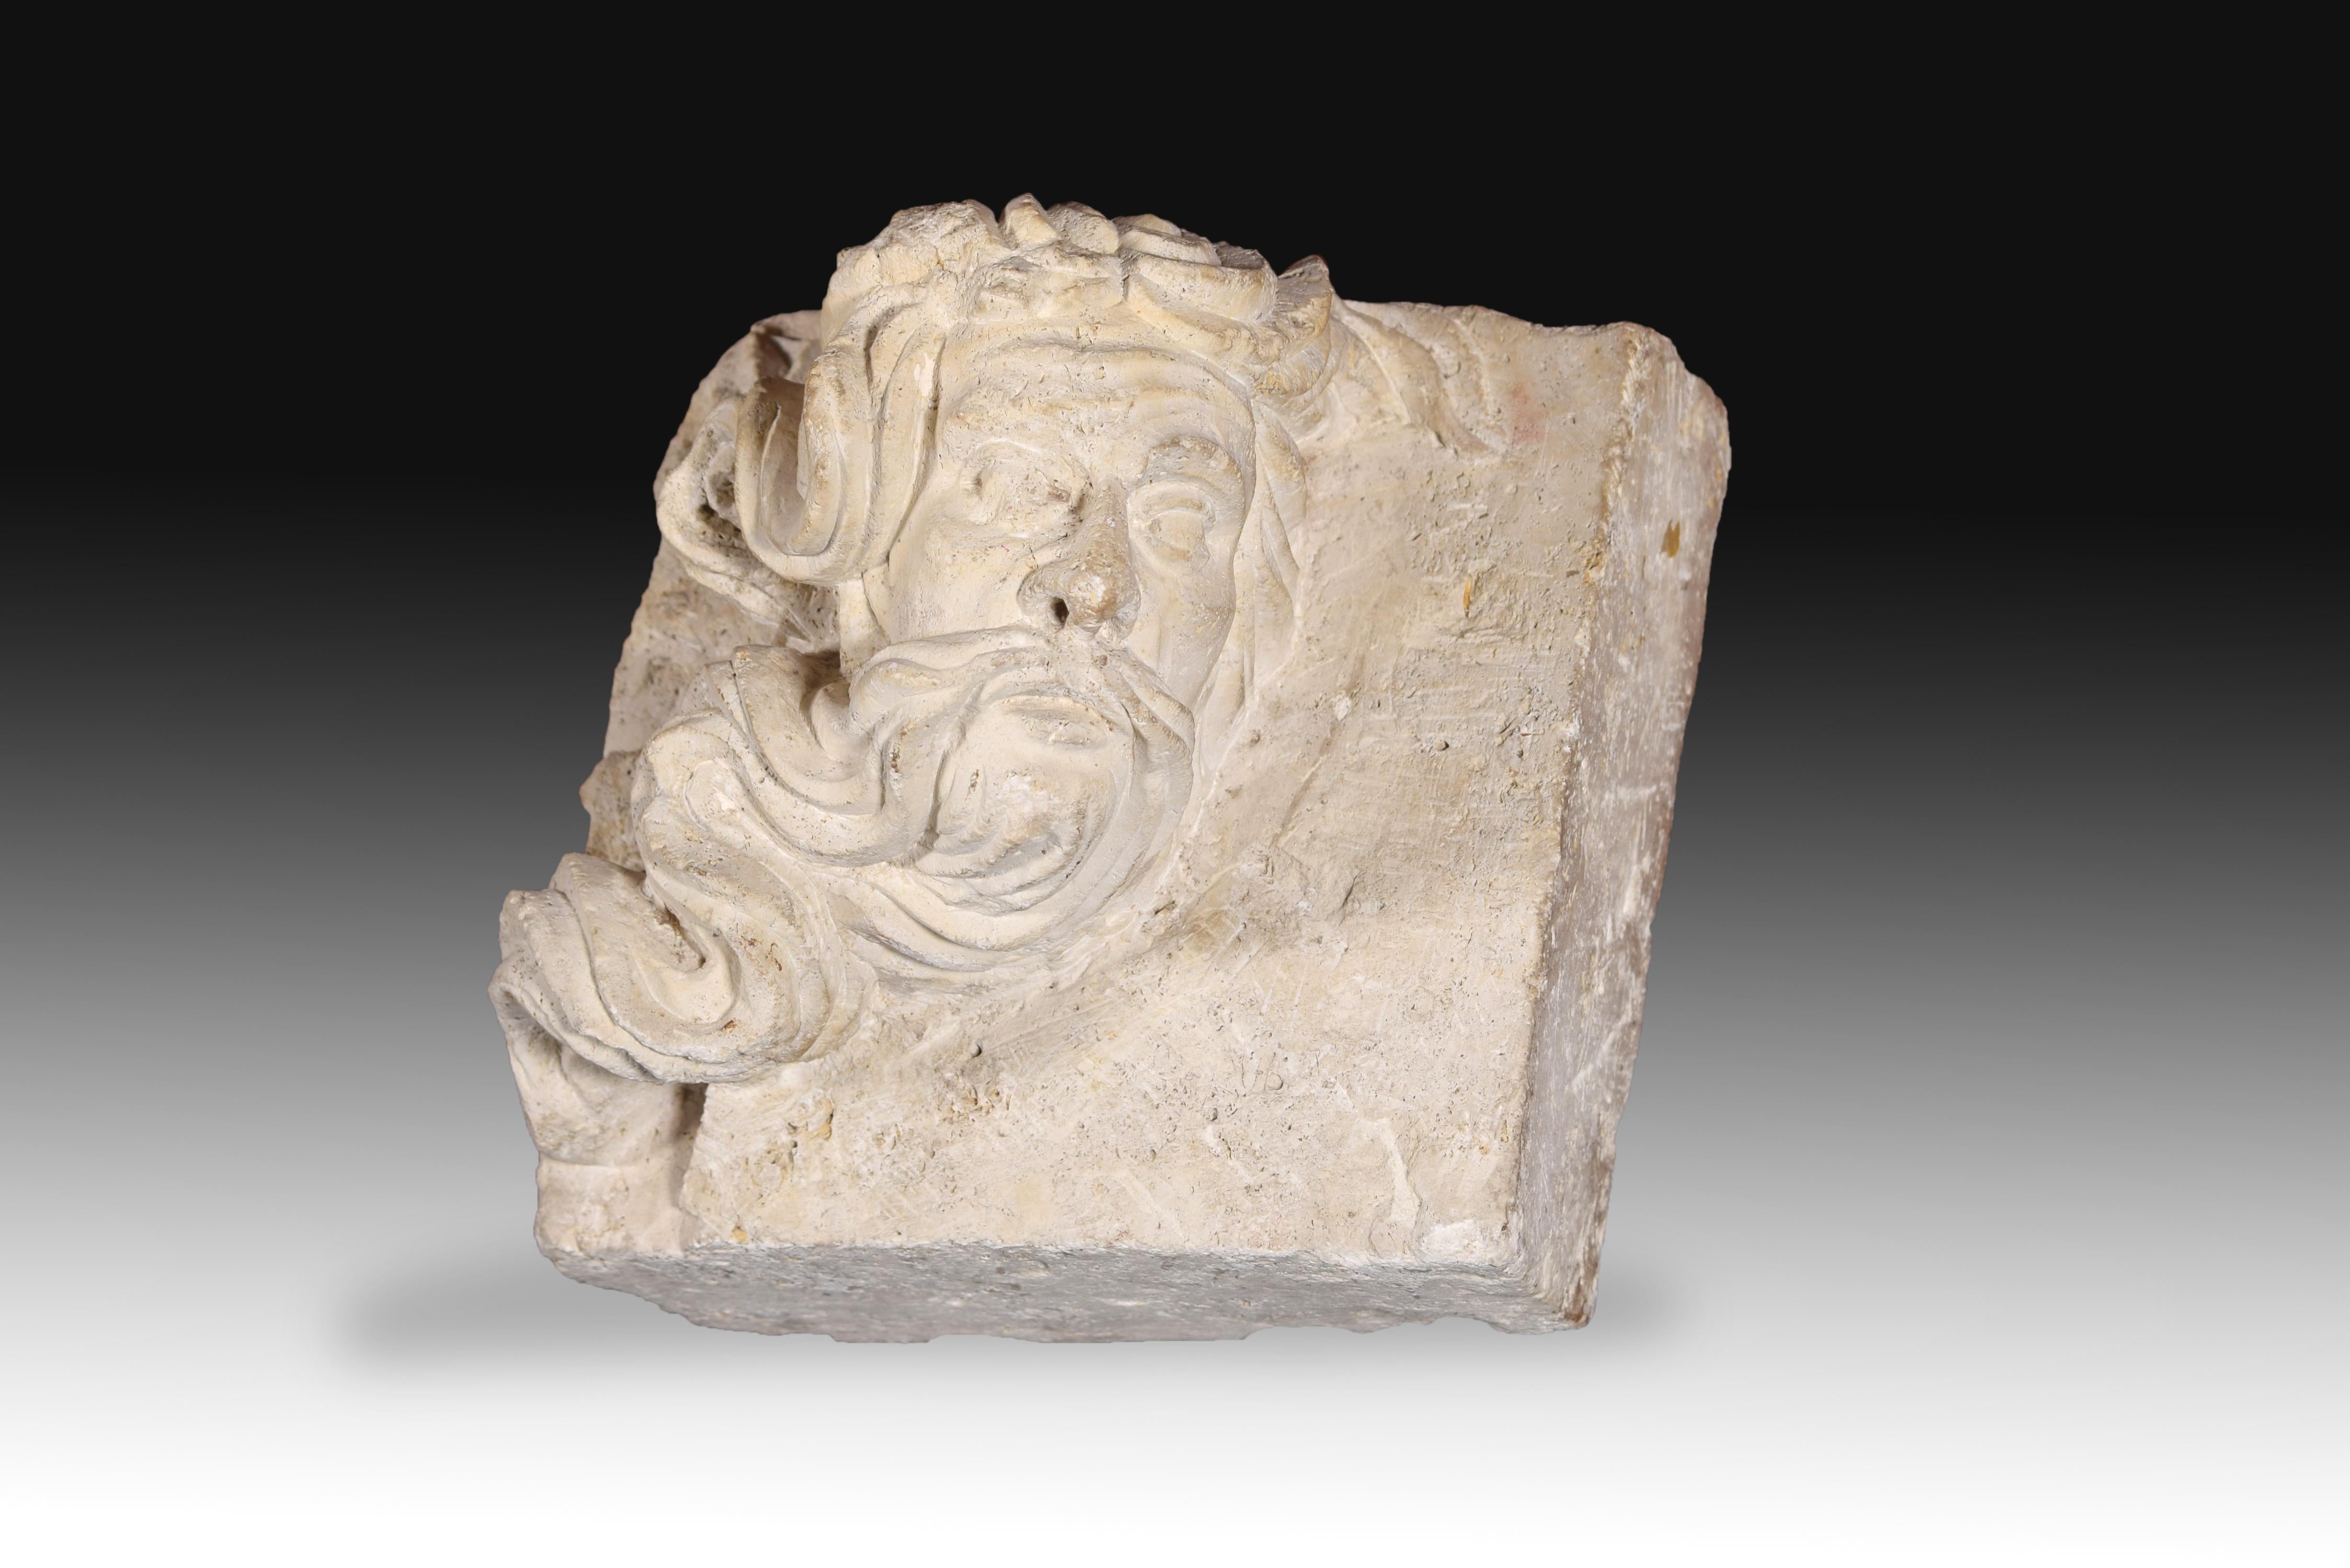 Männlicher Kopf. Geschnitzter Stein. Jahrhundert XVI.
 Geschnitztes Steinrelief, das ein nach rechts gewandtes männliches Gesicht zeigt. Es ist notwendig, sowohl die Qualität des Gesichts als auch das auffällige Detail der Bärte hervorzuheben, die